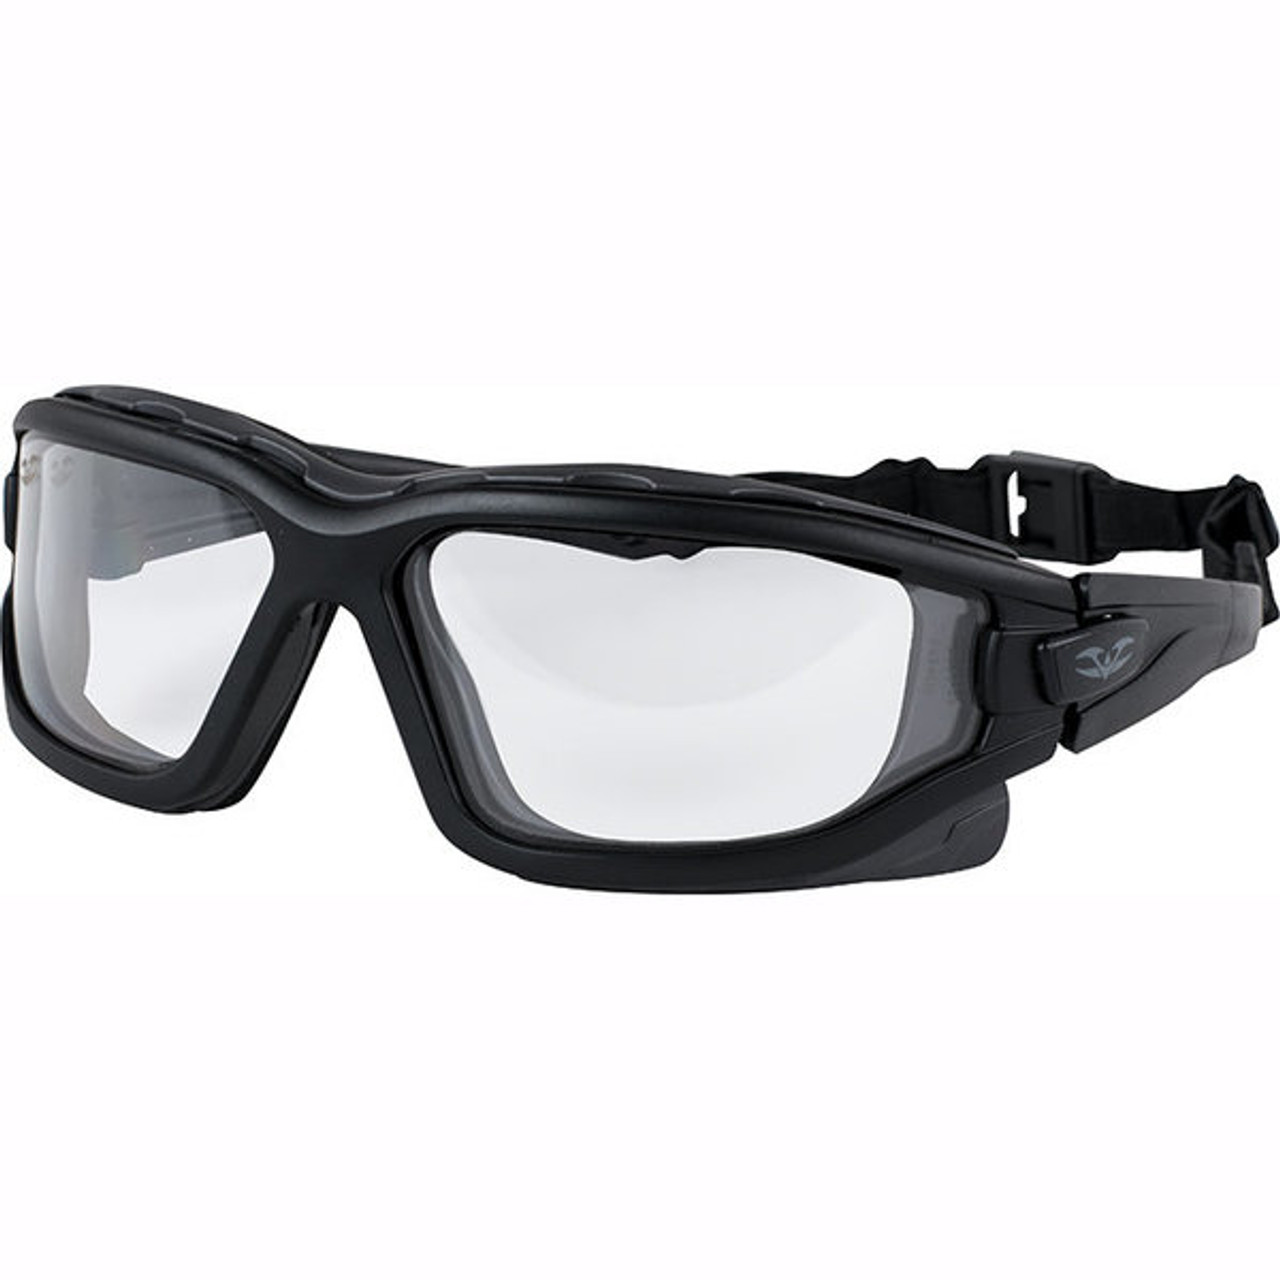 Страйкбольные очки. Тактические очки Bolle x500 l. Очки Clout Goggles. Arena Airsoft очки. Страйкбольные очки "Paulson ".